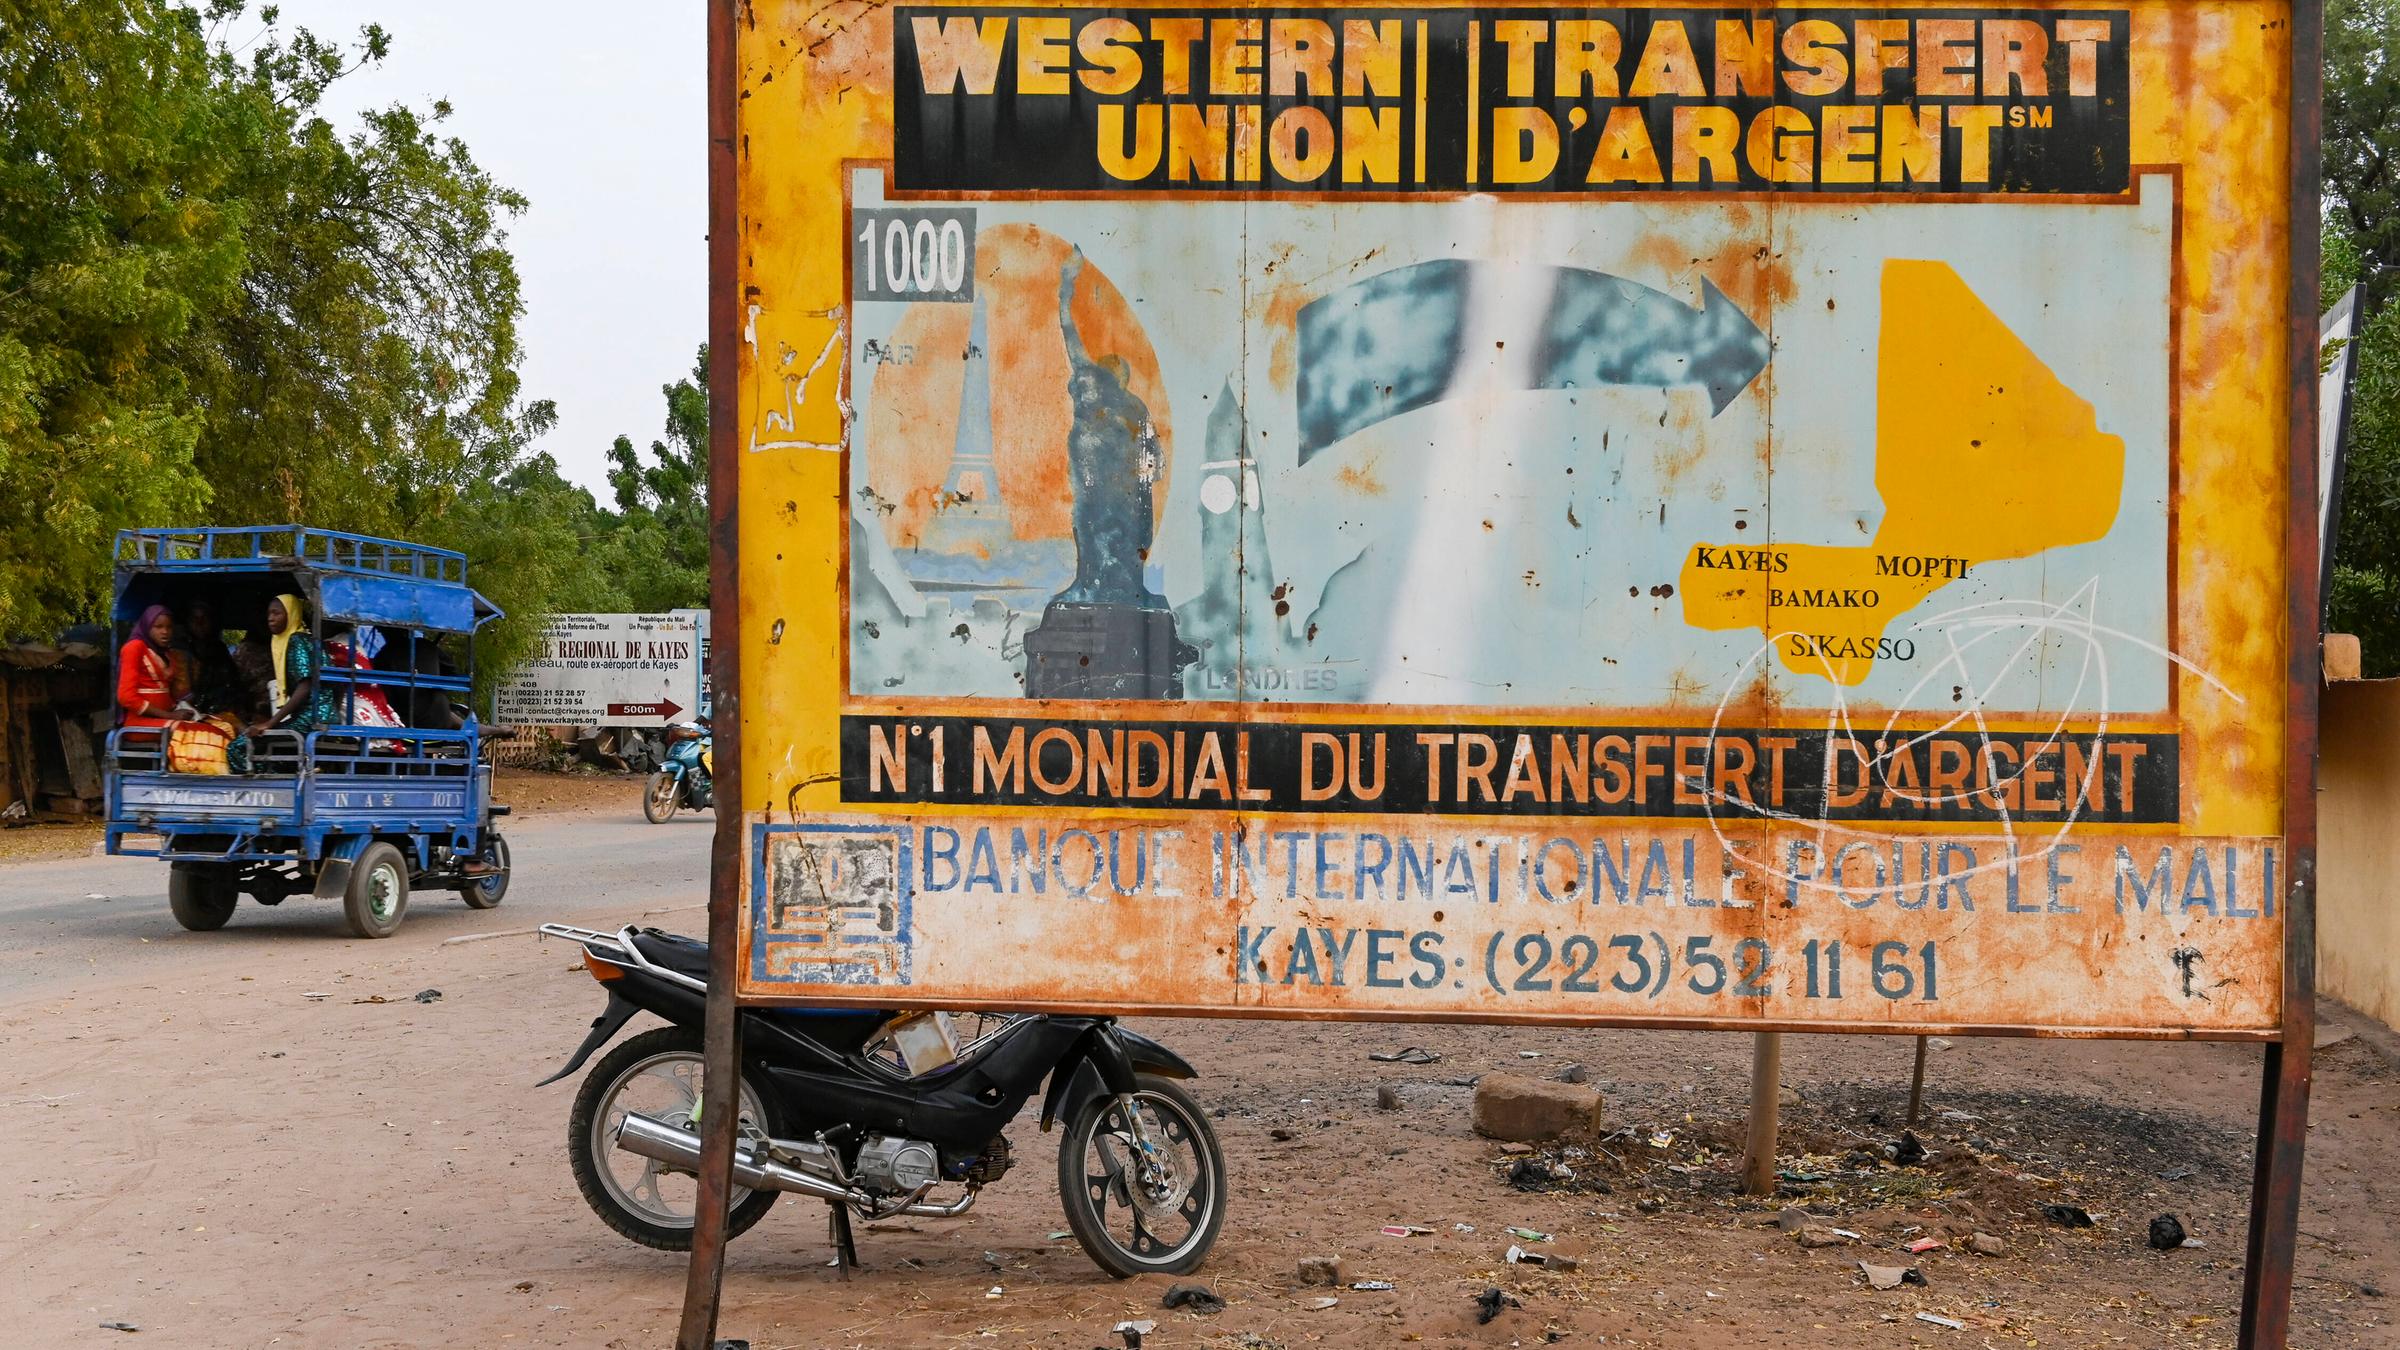 Altes Schild von Western Union in Mali. Es zeigt eine Illustration von Wahrzeichen westlicher Städte, von denen ein Pfeil nach Mali führt.